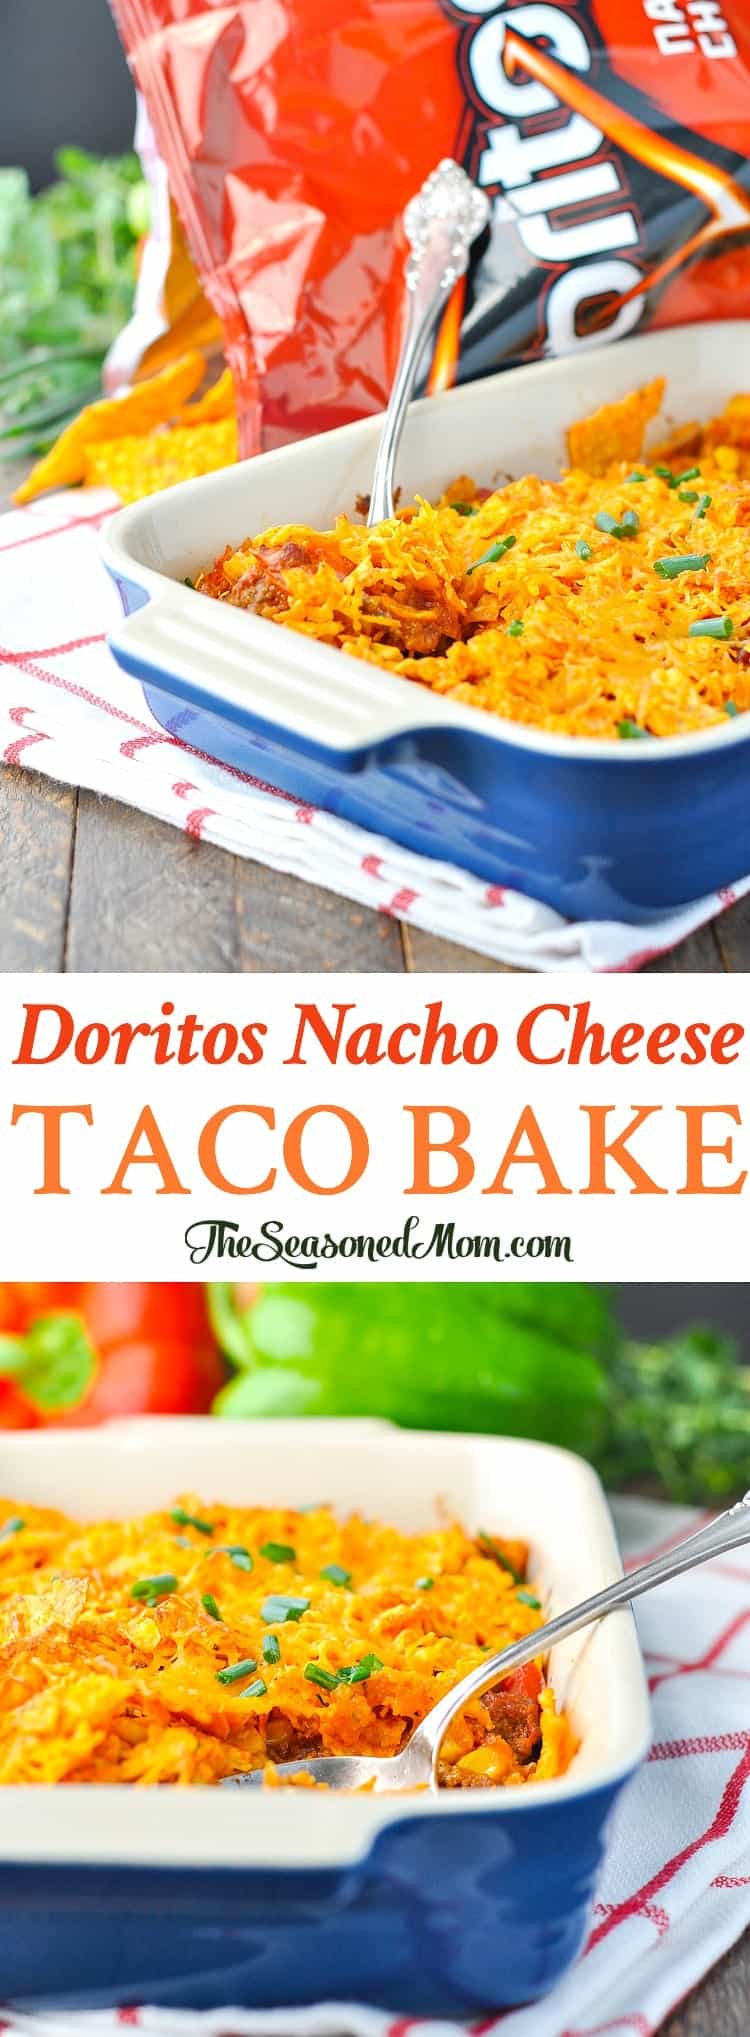 Doritos Nacho Cheese Taco Bake - The Seasoned Mom